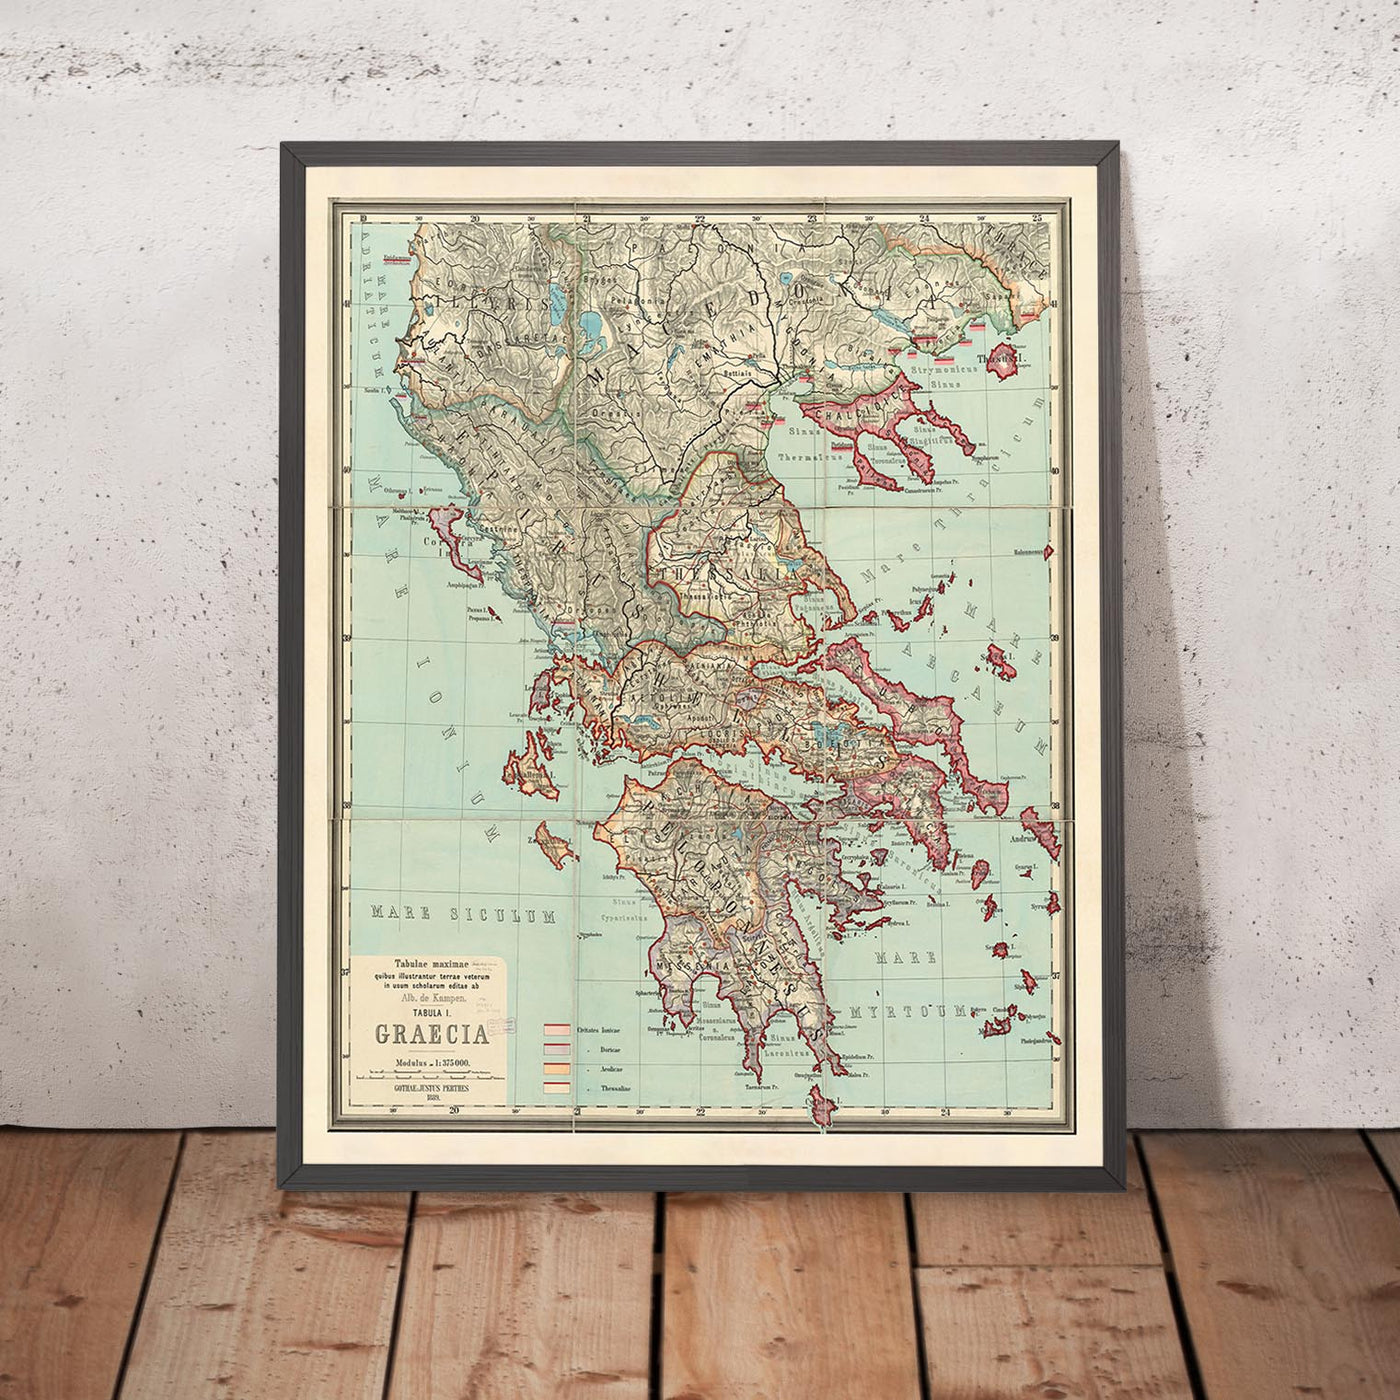 Mapa antiguo de la antigua Grecia de Van Kampen en 1889: Atenas, Corfú, Zakynthos, Megara, Esparta